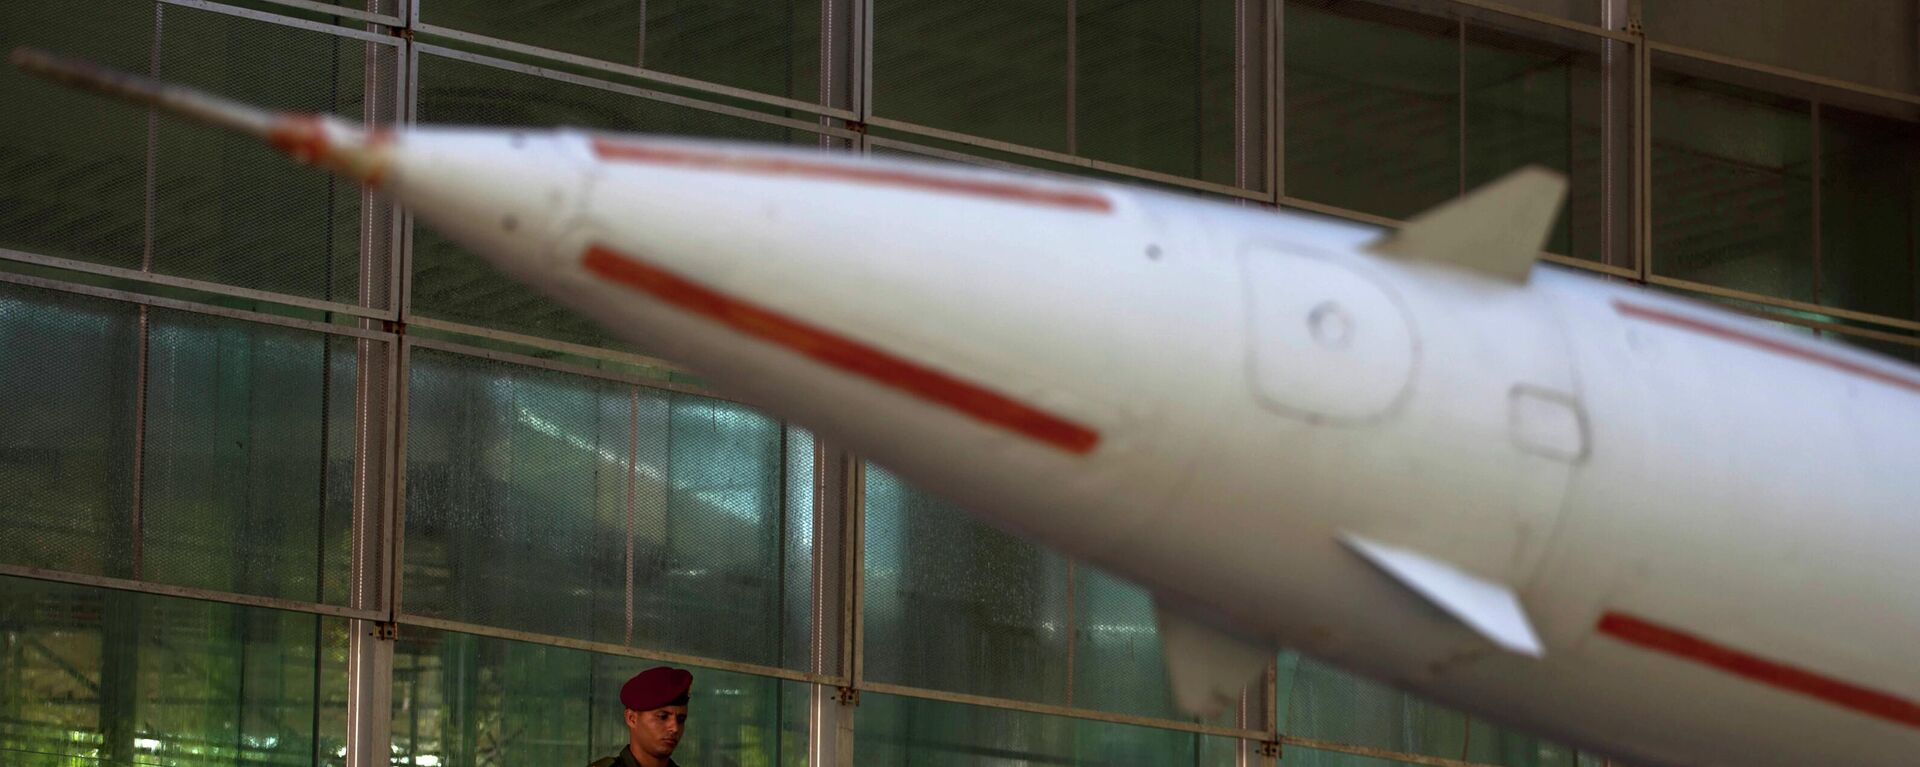 Una réplica del misil antiaéreo en una exposición que conmemora el 50º aniversario de la crisis de los misiles en Cuba dentro del Museo de la Revolución en La Habana, Cuba. - Sputnik Mundo, 1920, 13.10.2022